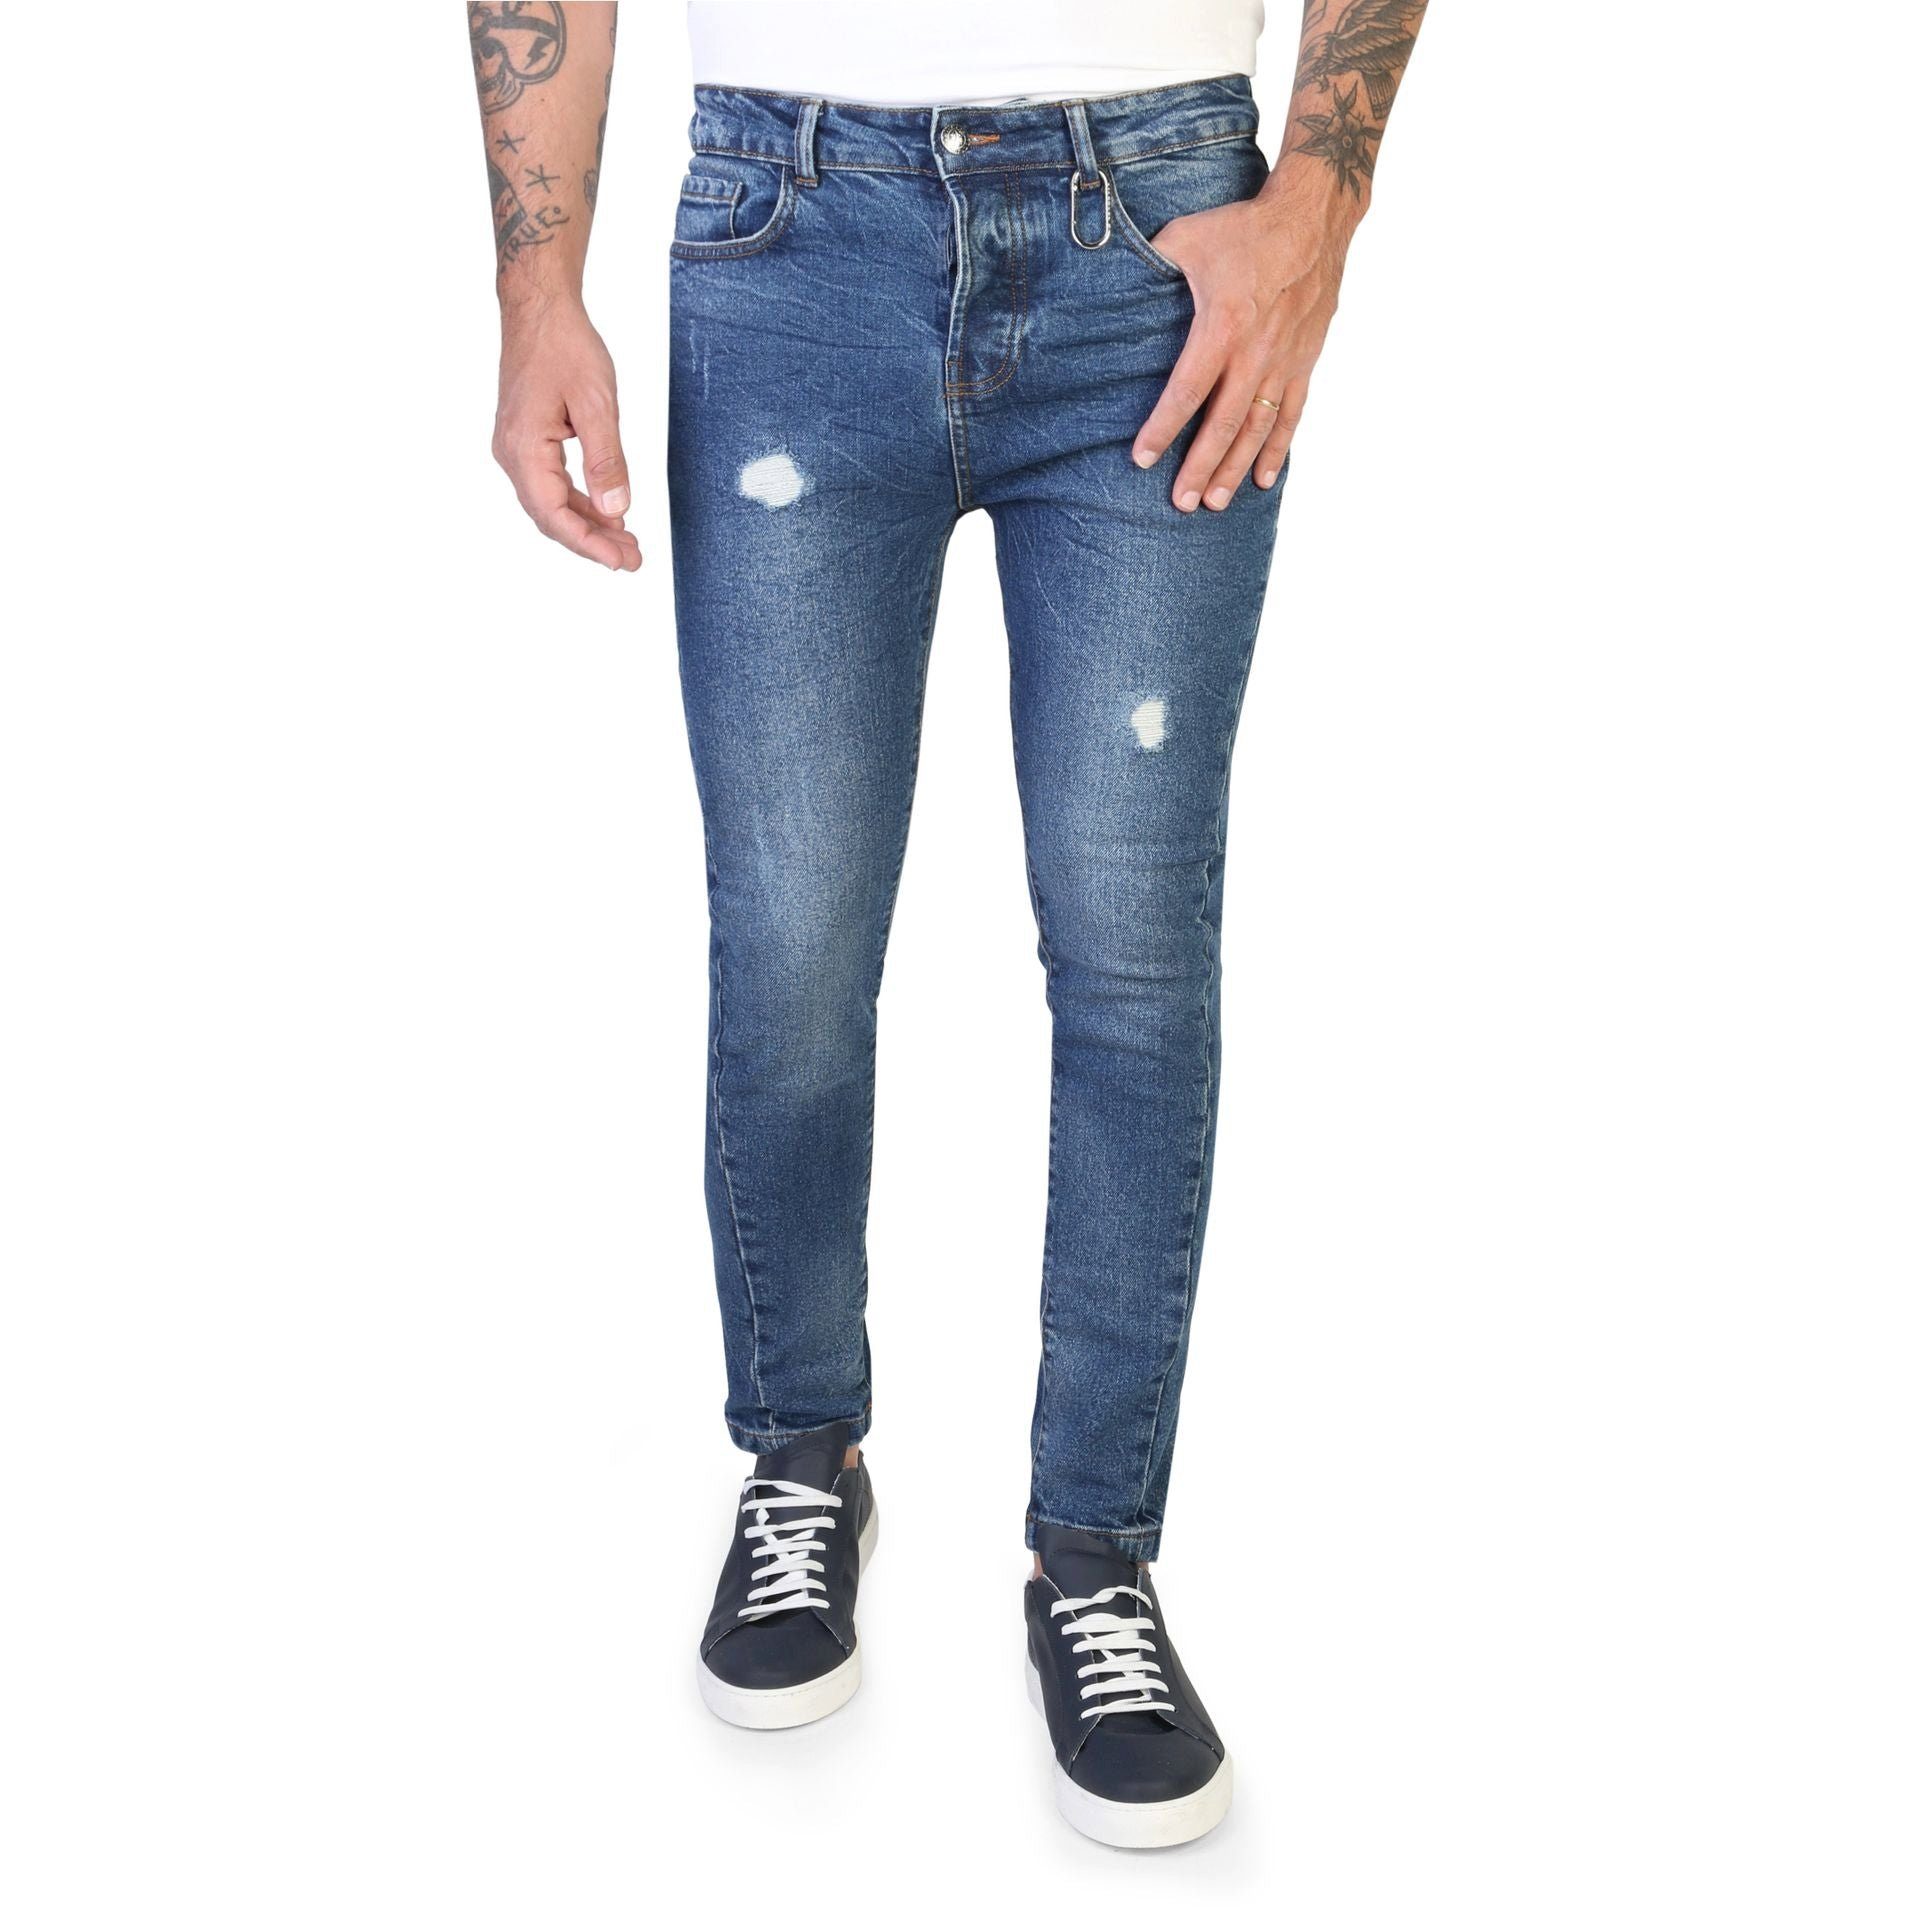 John Richmond Bequeme Jeans Herren Jeans von Richmond Klassisches Design und hoher Tragekomfort